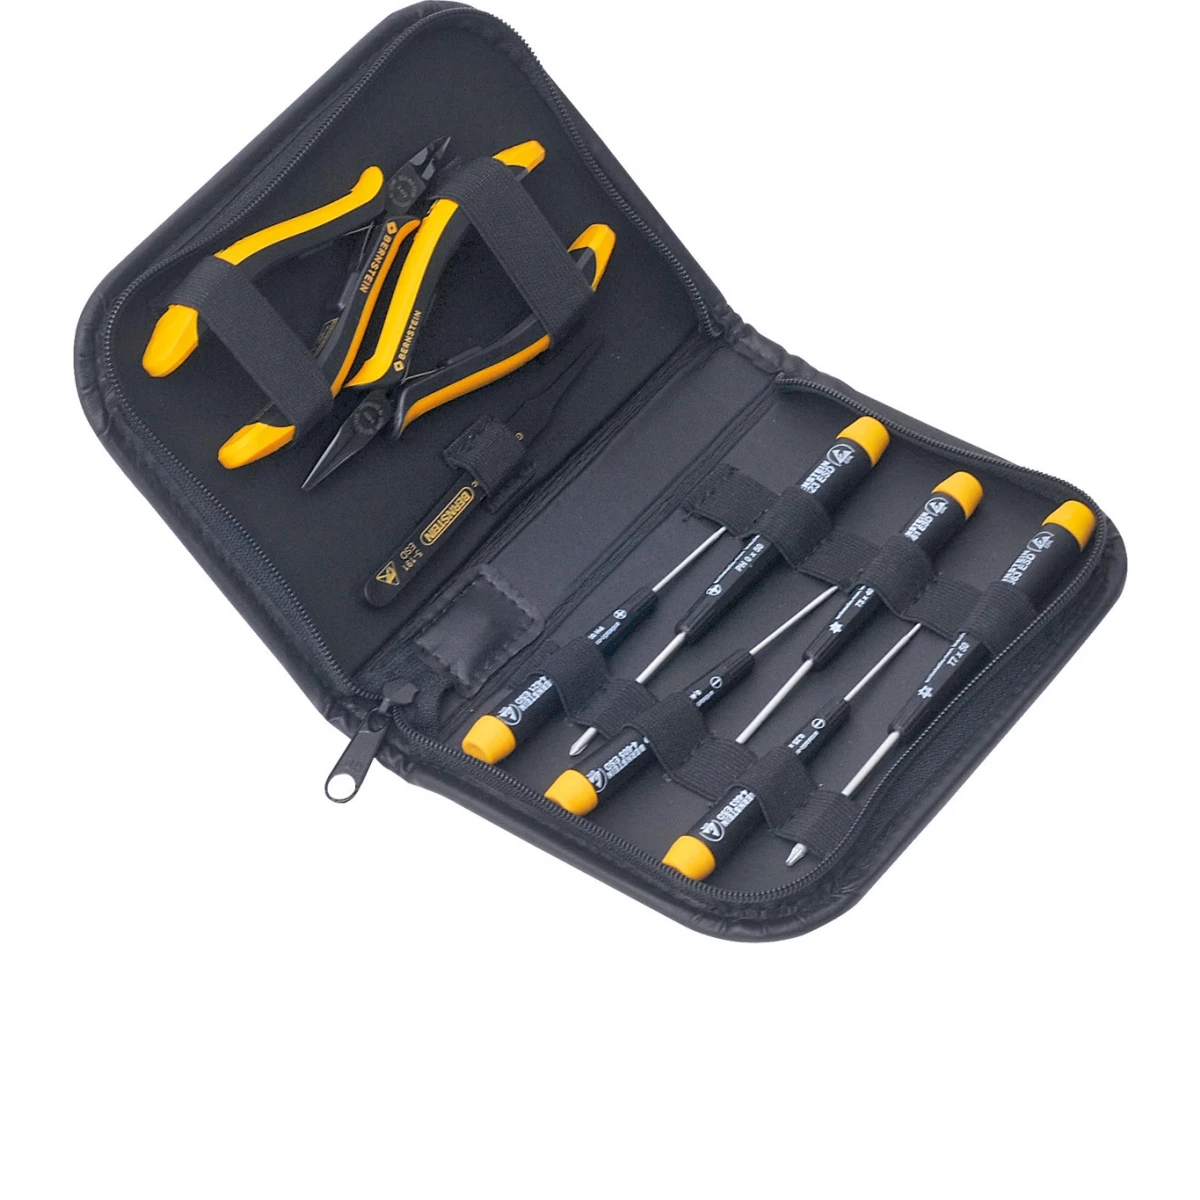 ESD tool kit